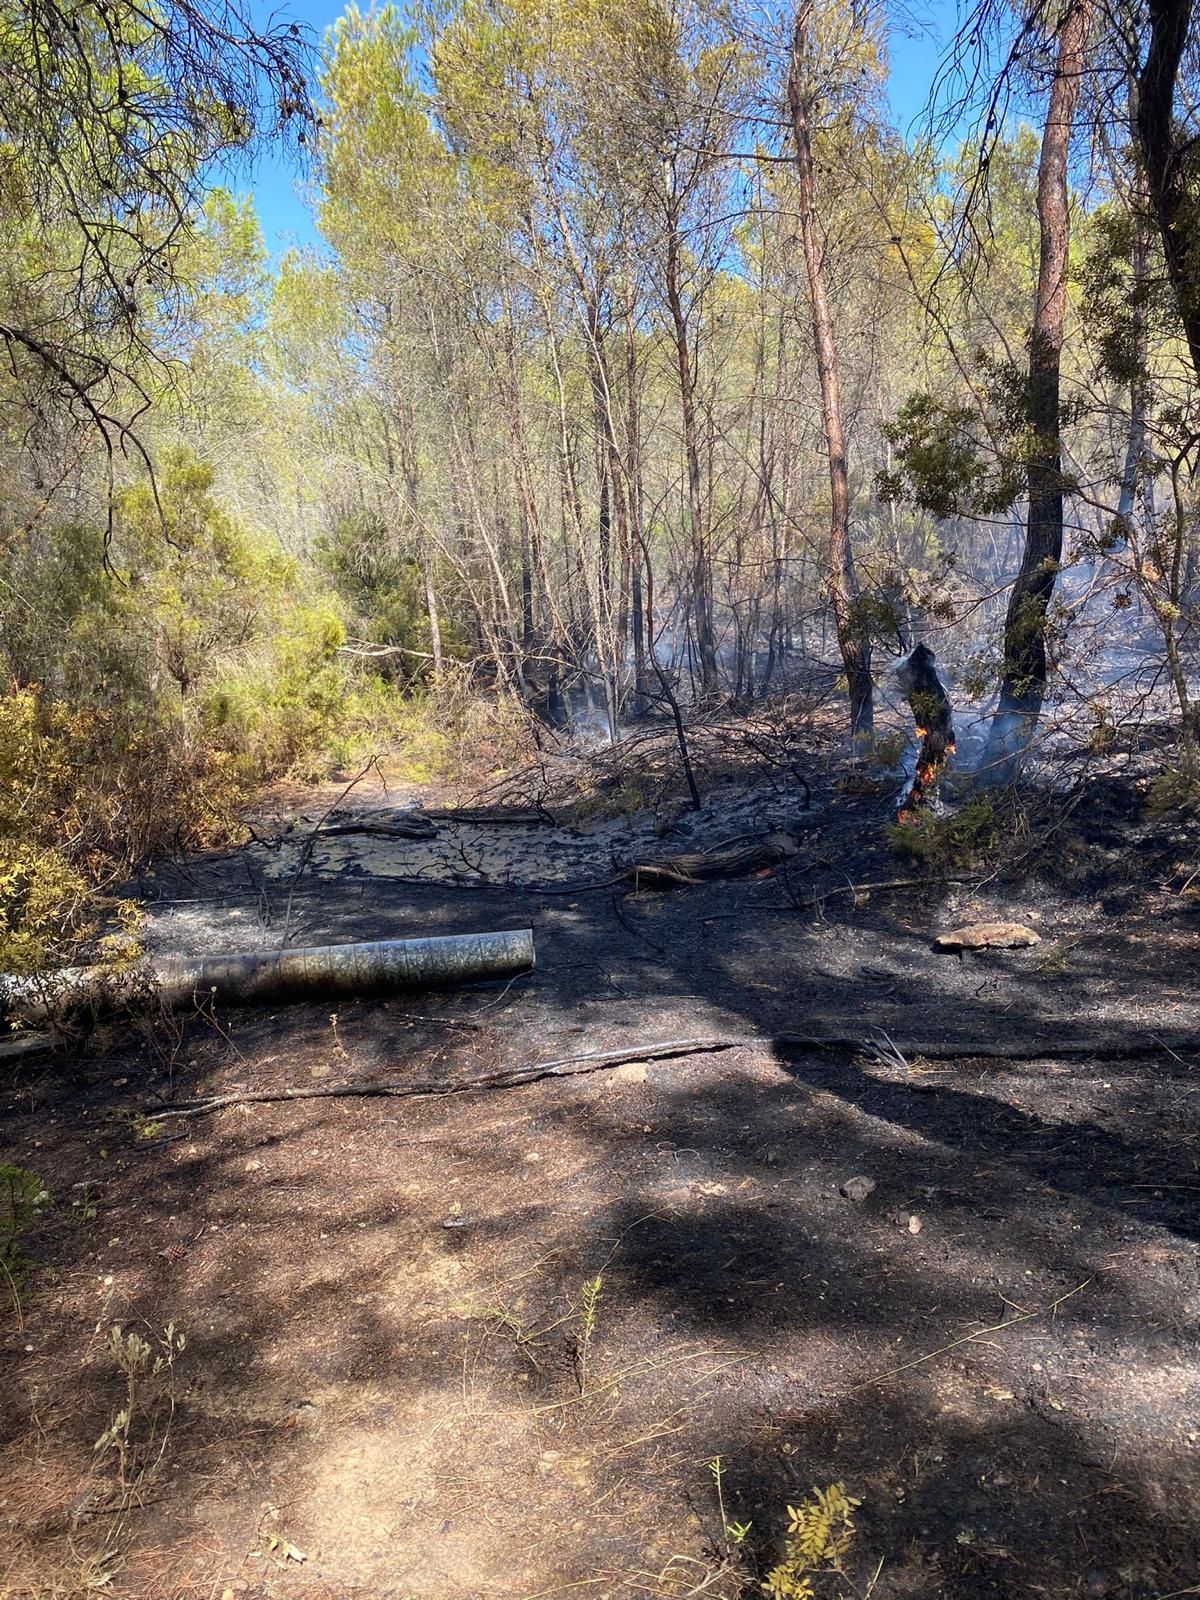 Declarado un incendio forestal en Santa Eulària